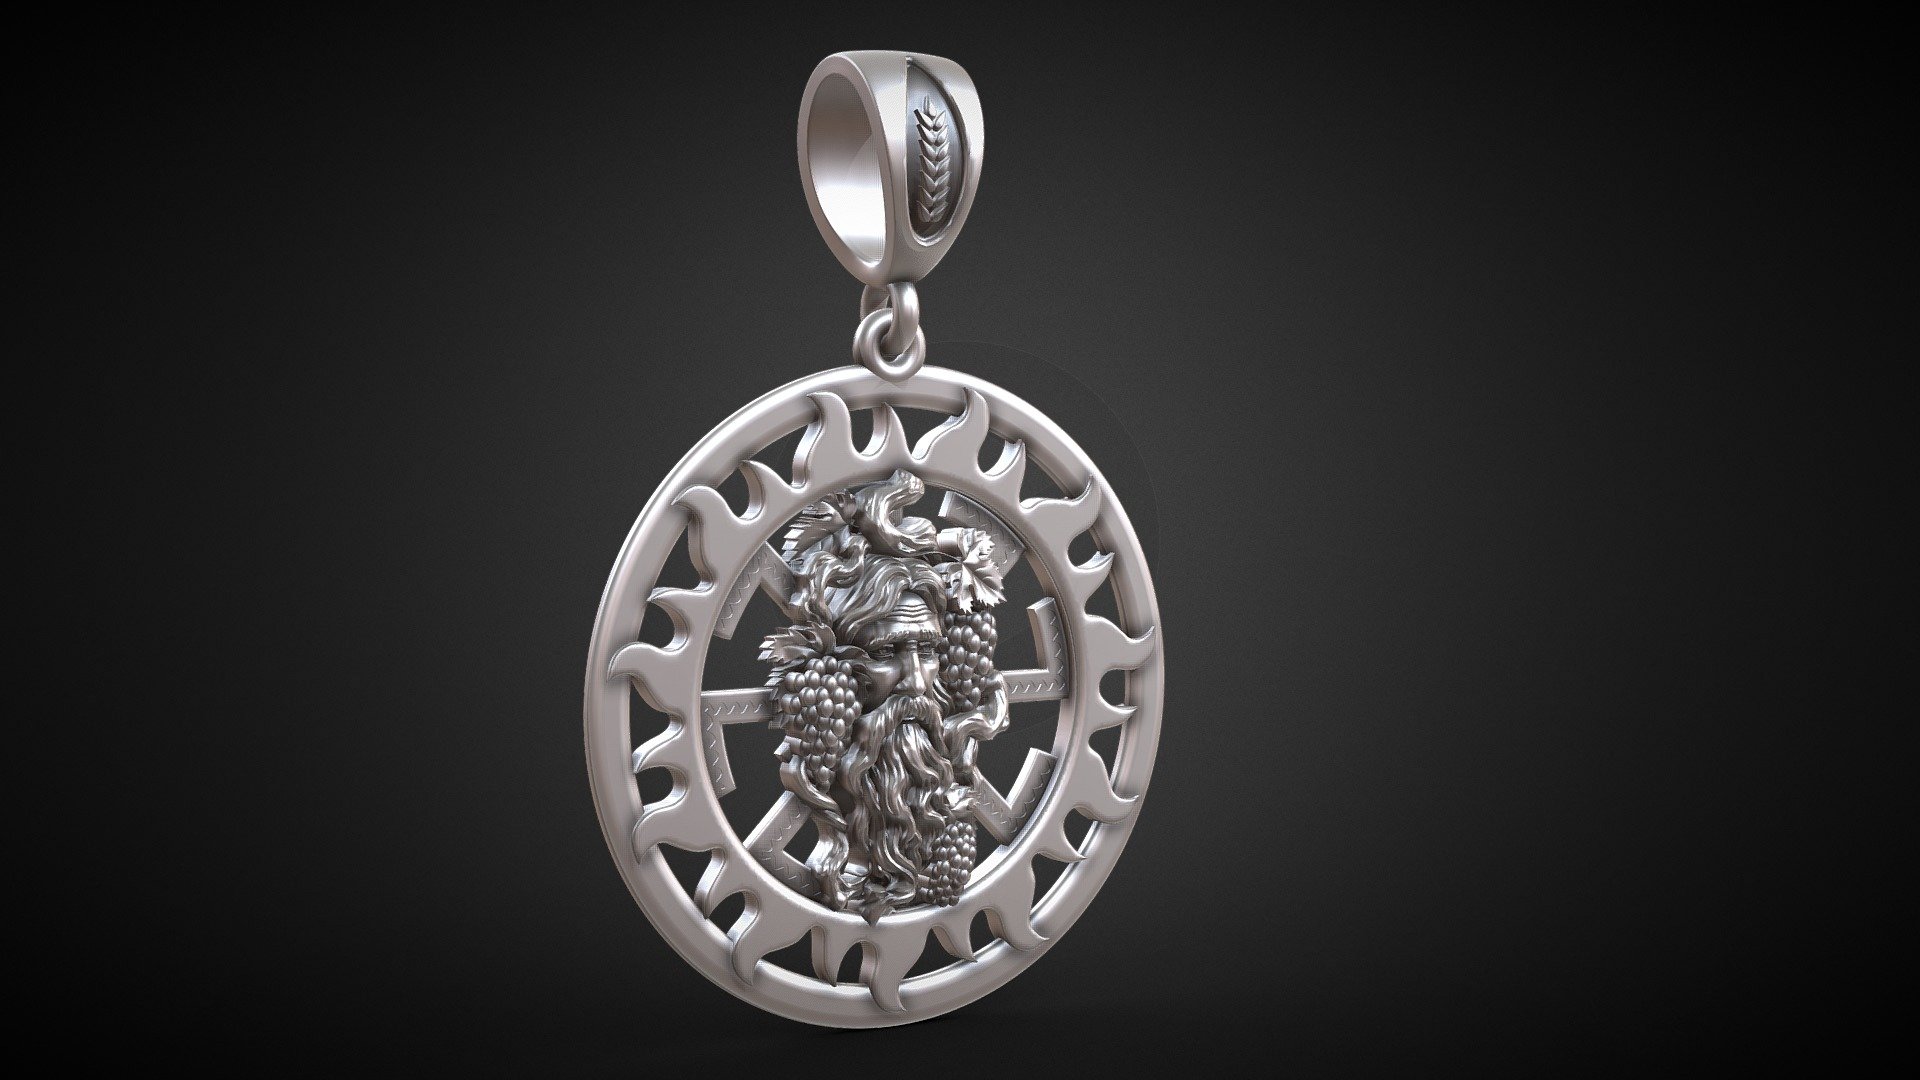 Diameter 30mm

Approximate weight in silver 9g

Approximate weight in gold 14g - Old man beard sun pagan amulet - Buy Royalty Free 3D model by jewelmodel.net (@jewelmodel) 3d model